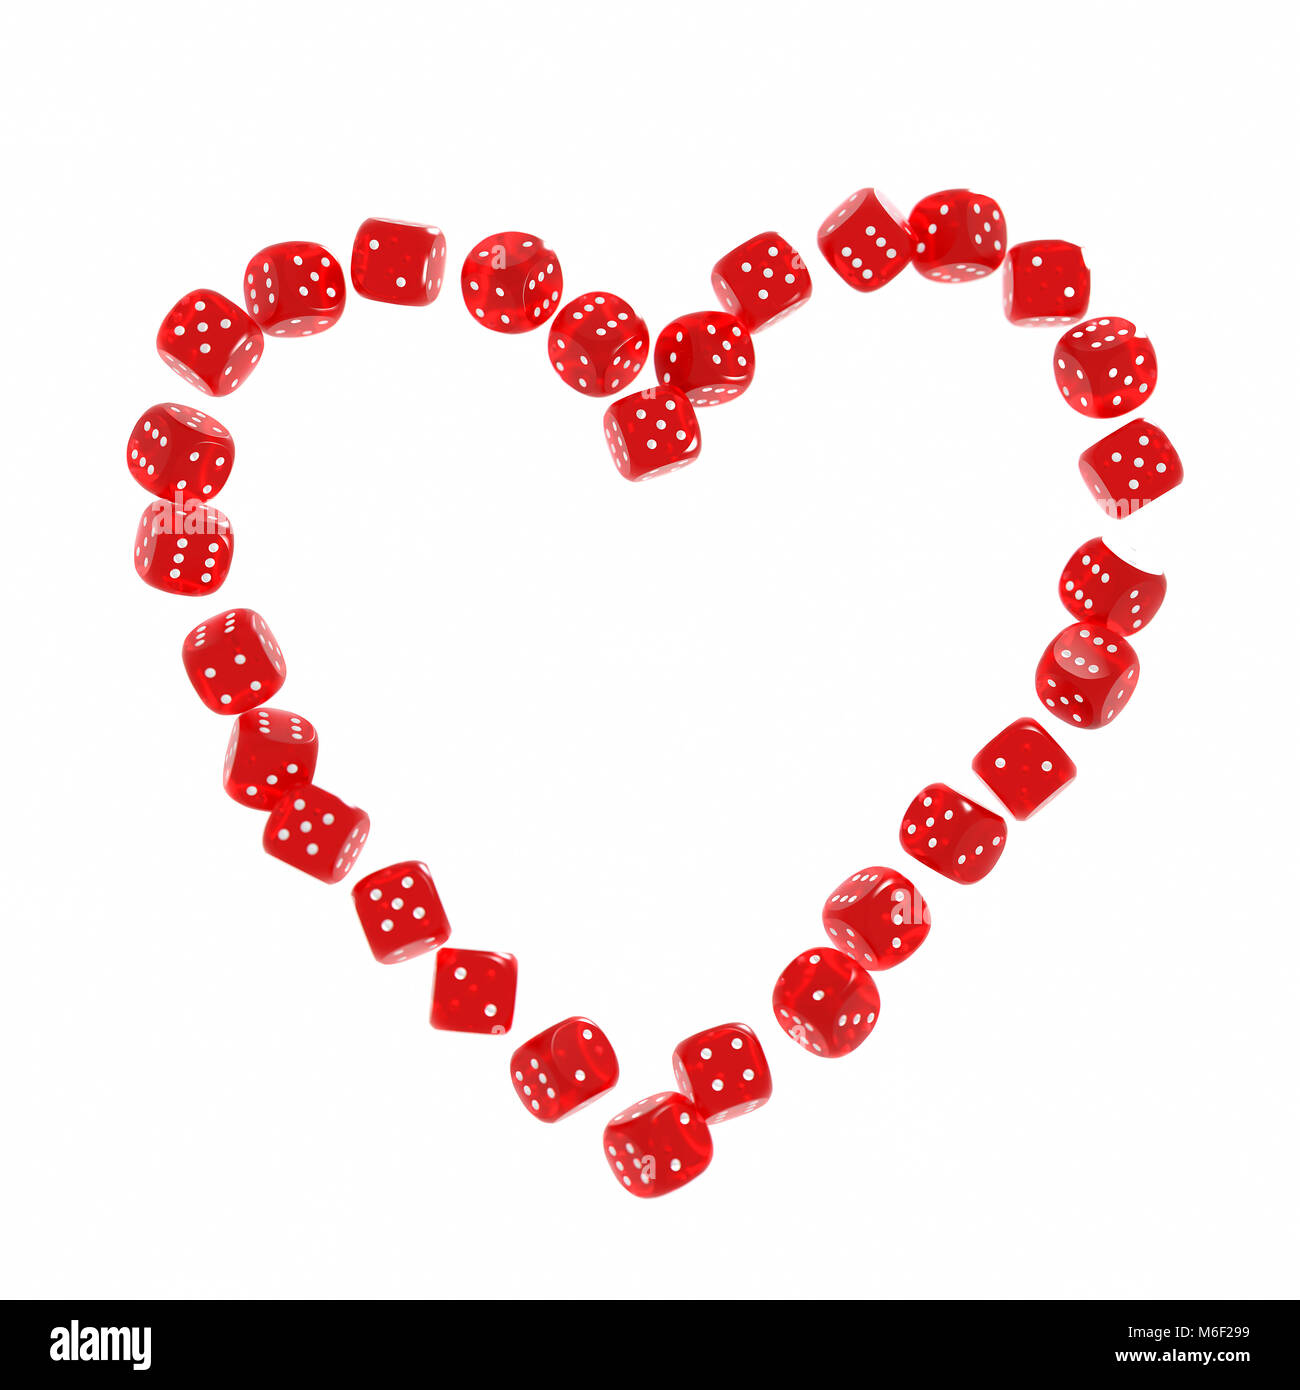 Red Casino Würfel zusammen in Form eines Herzens auf weißem Hintergrund gestapelt. Glück im Leben Konzept Stockfoto